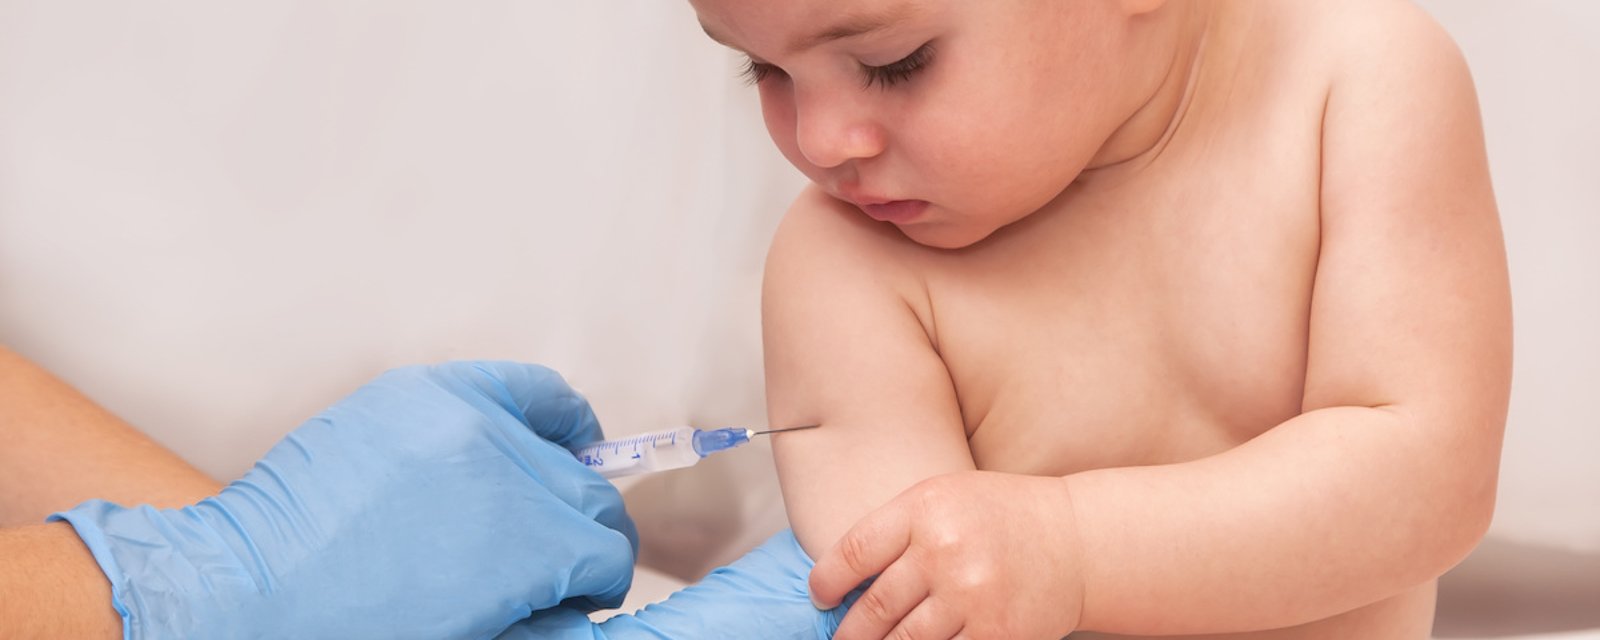 Une autre étude démontre qu’il n’y a aucun lien entre le vaccin contre la rougeole et l’autisme